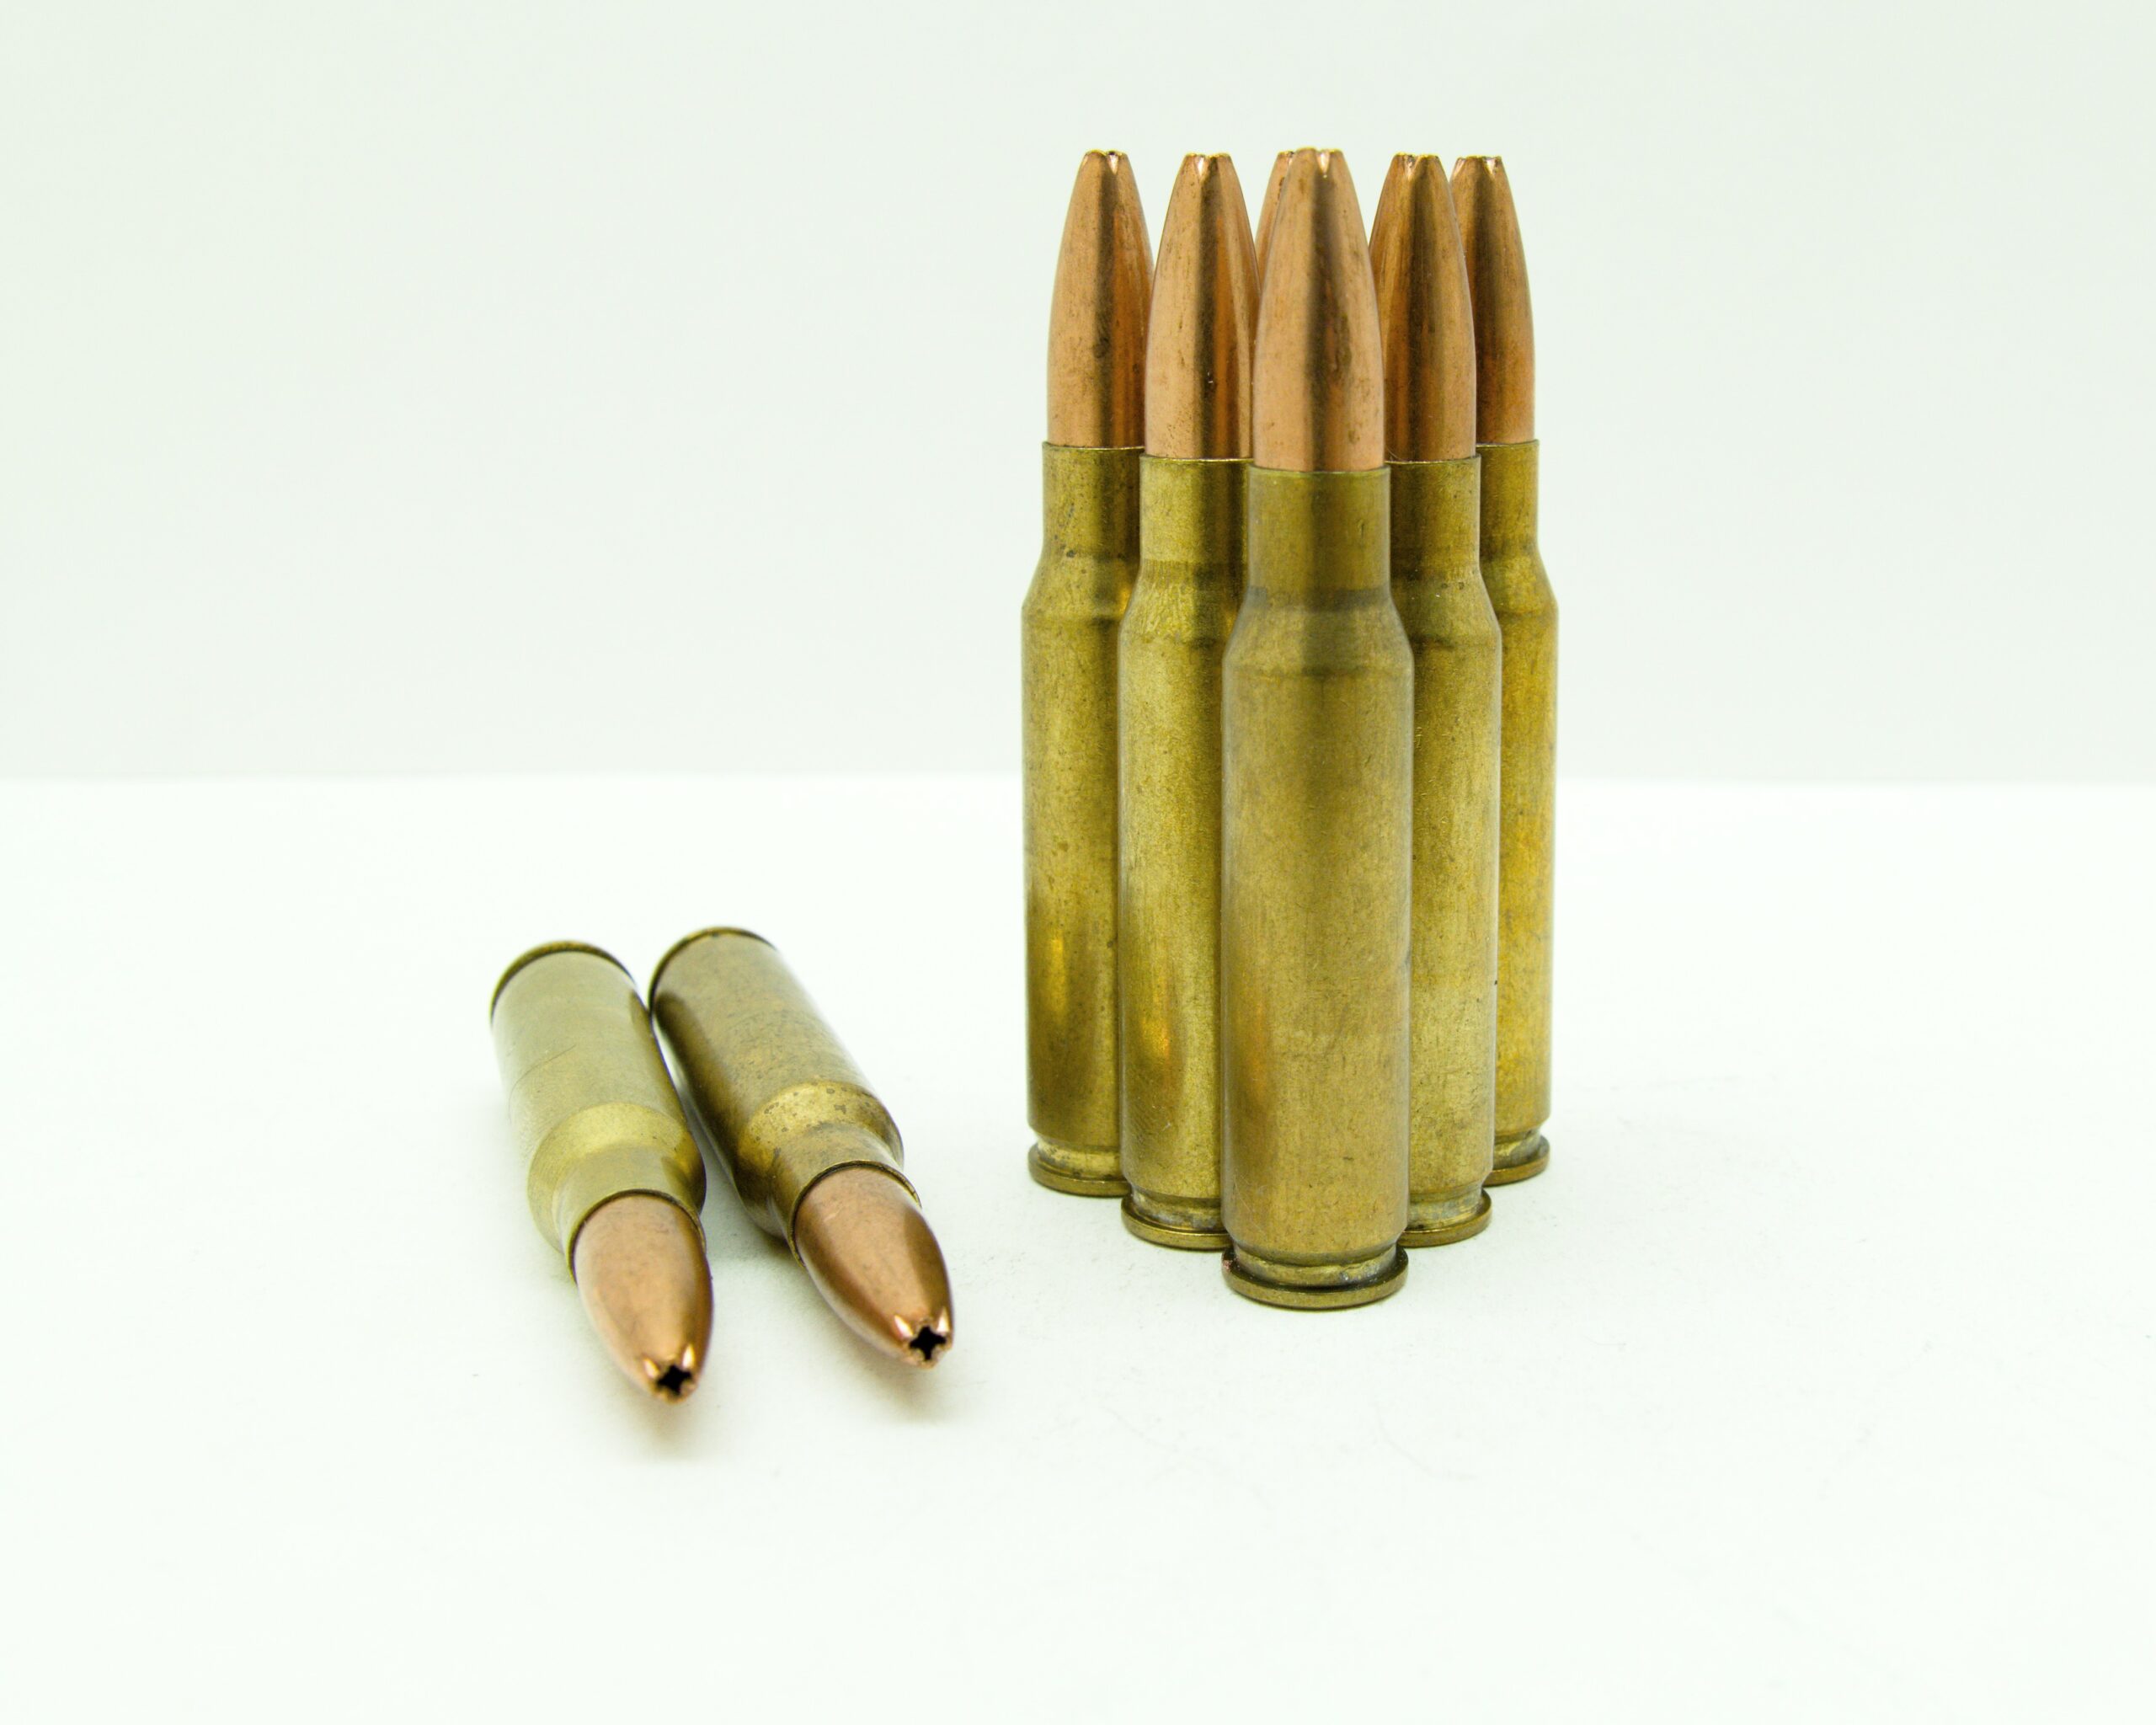 30-06-ammunition-w-165-grain-sierra-gameking-hollow-point-boat-tail